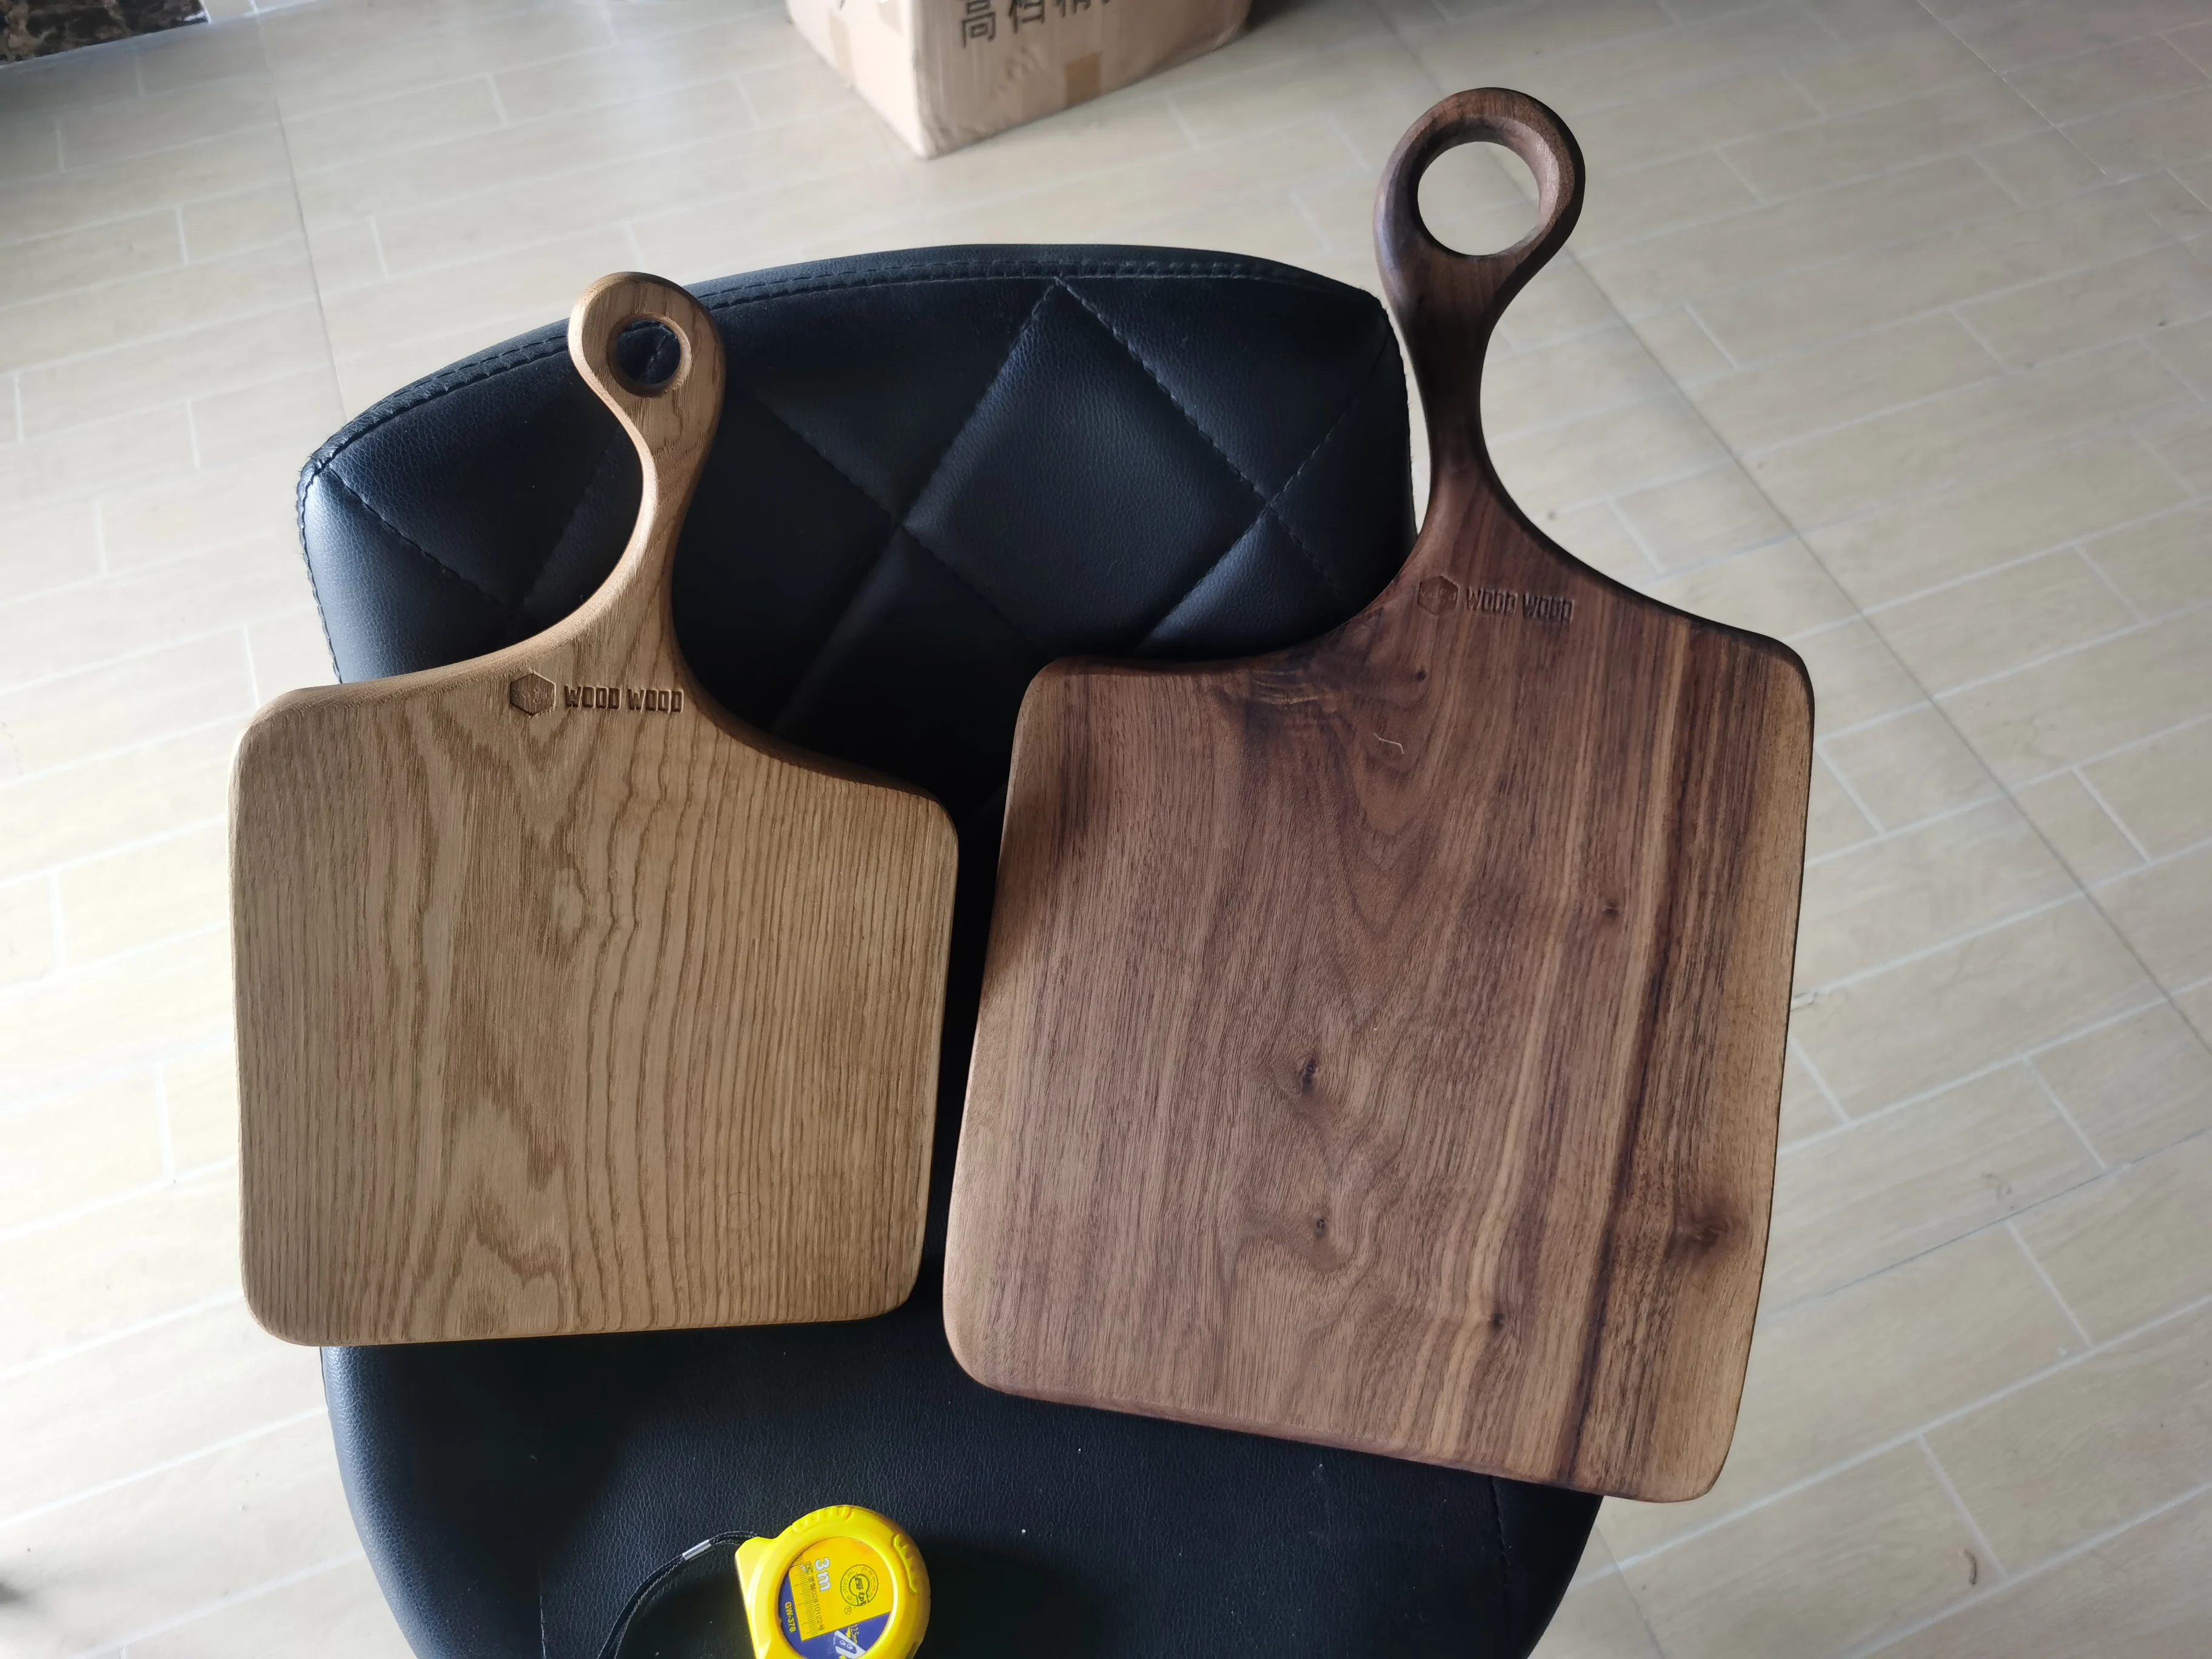 Niagara Cutlery™ Multi Wood Cutting Board 12